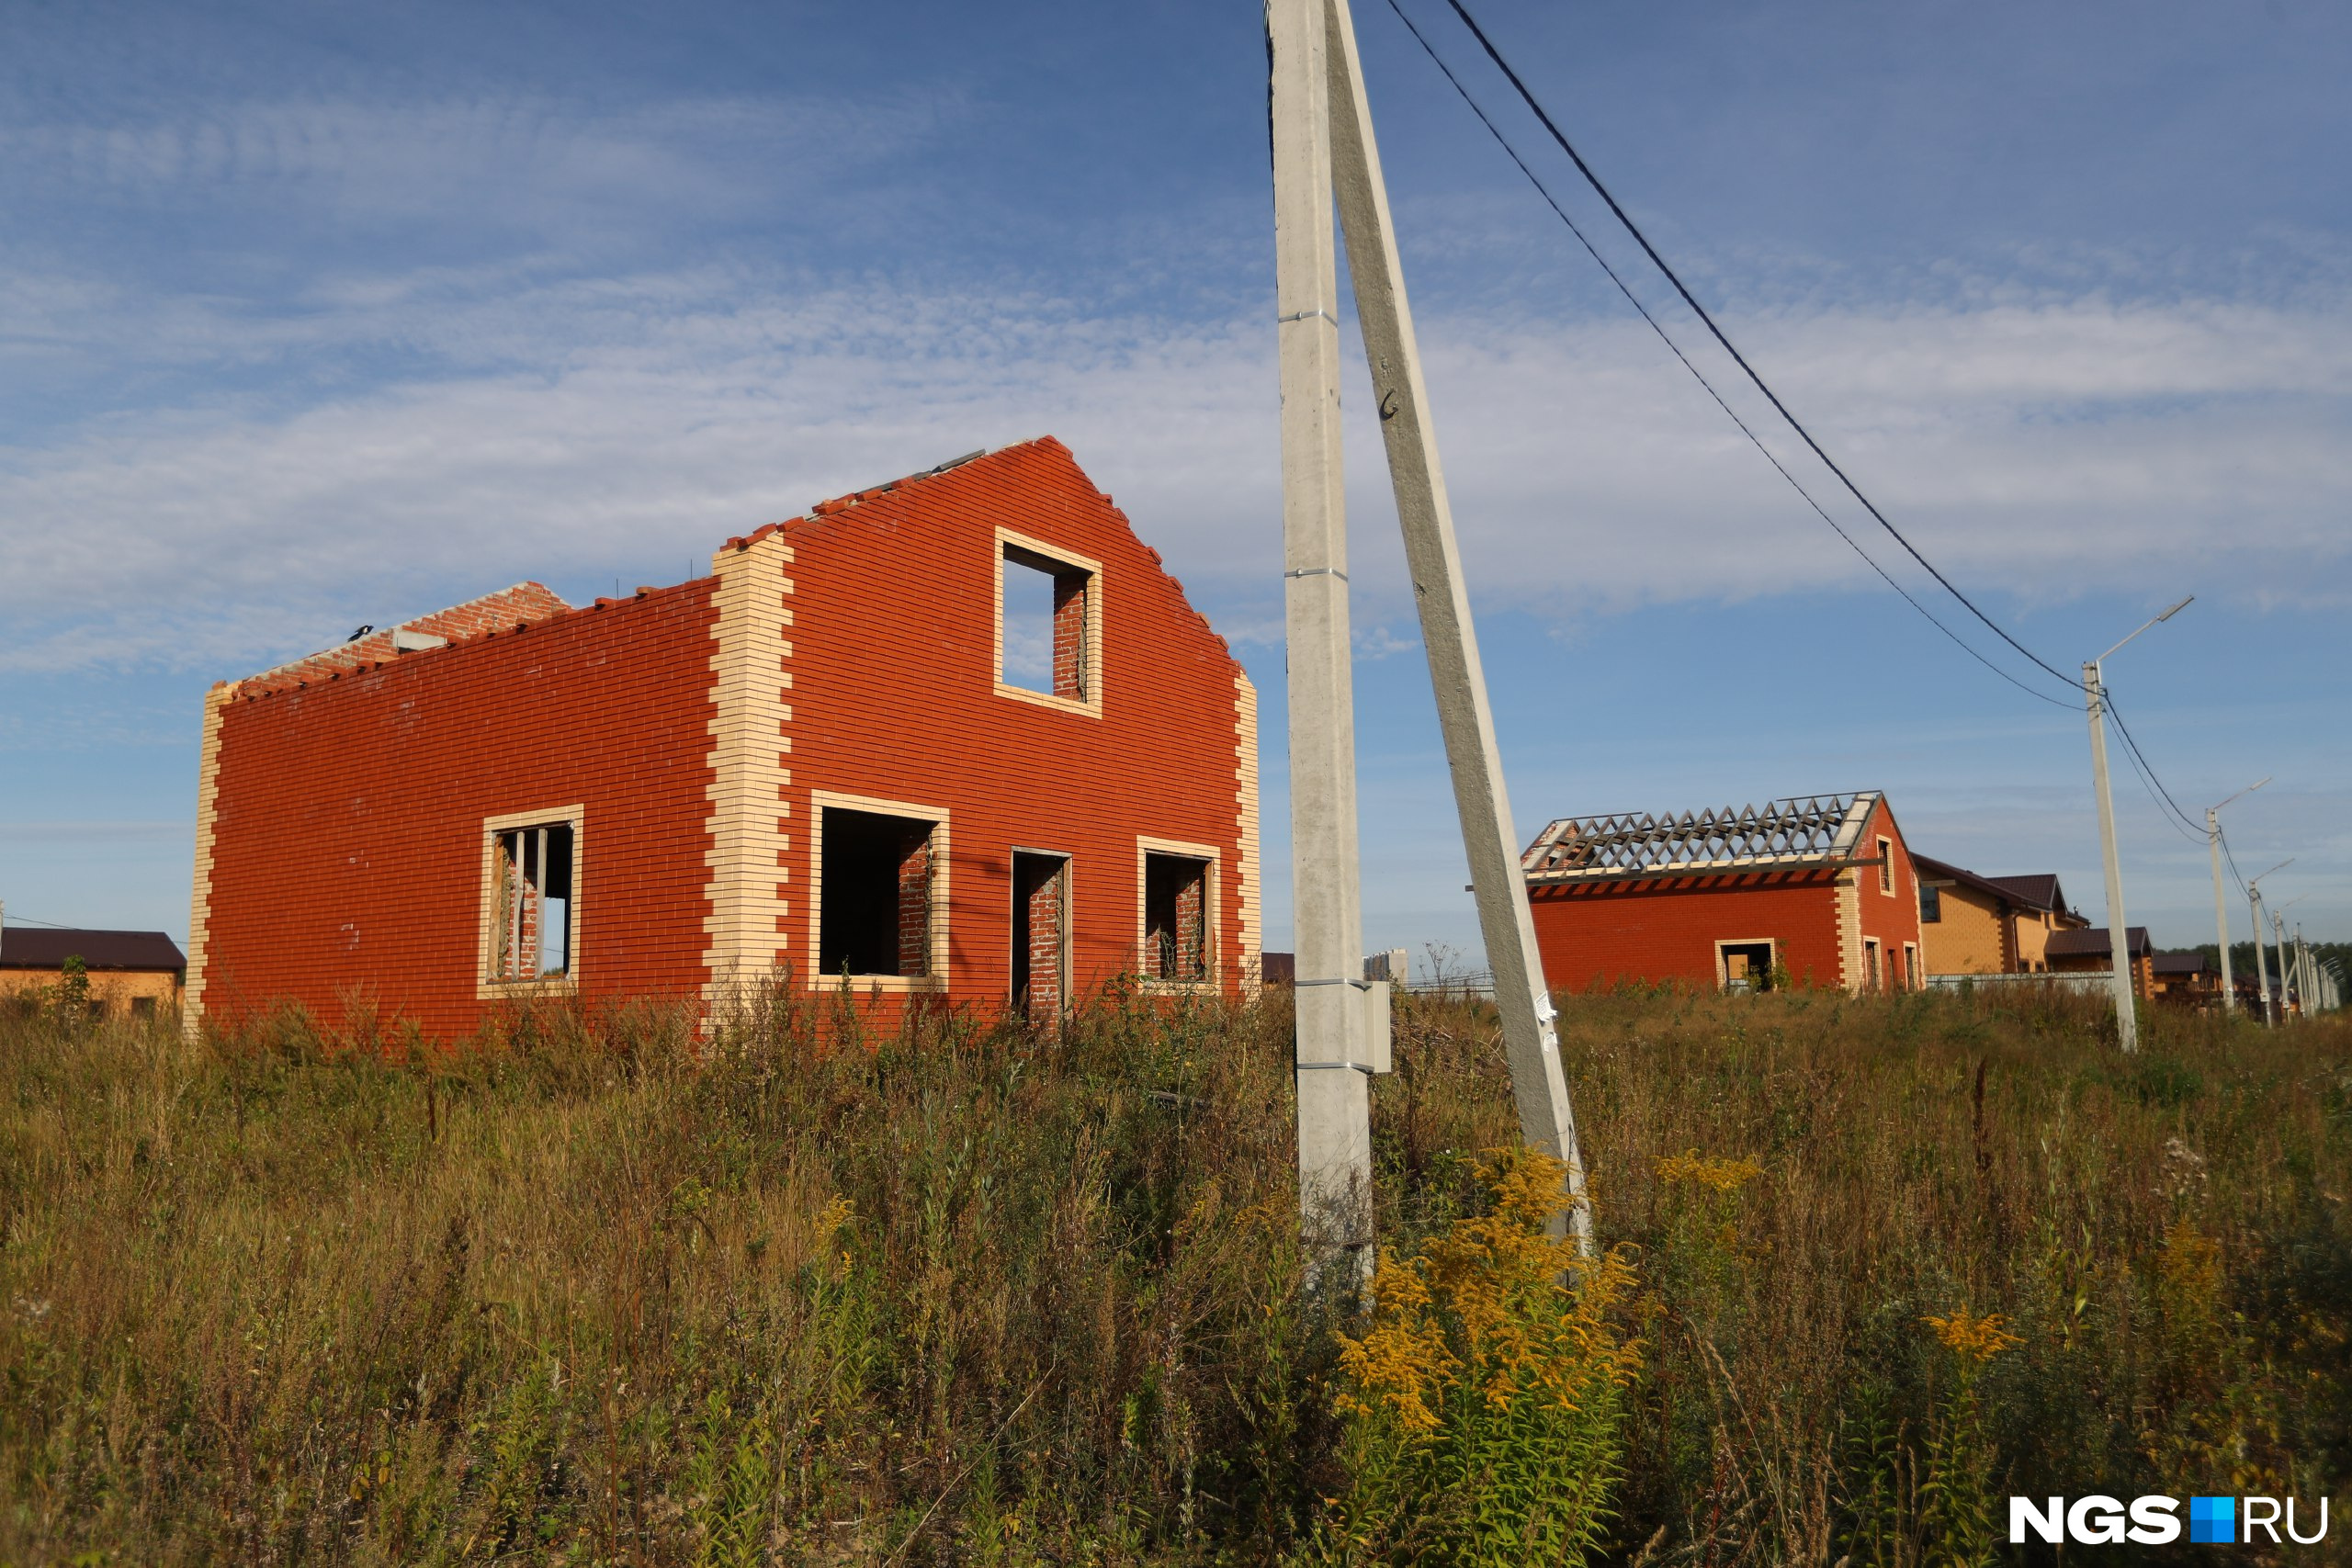 Это недостроенный дом еще одного пайщика — Александра Дурова. У субподрядчика не хватило денег на строительство крыши